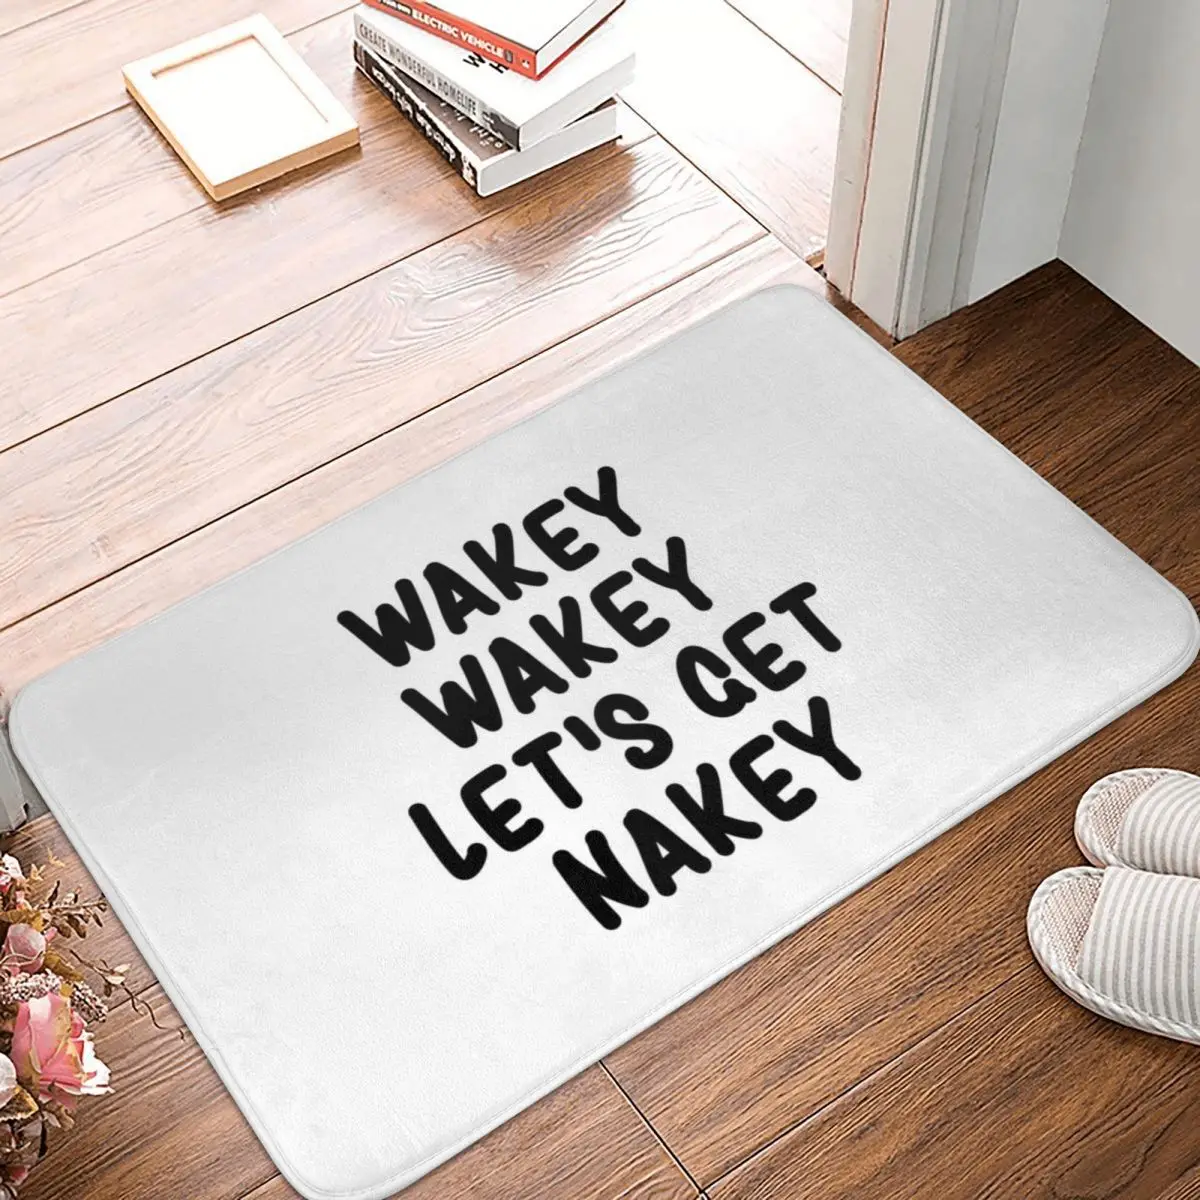 

Напольный коврик Wakey Let's Get Nakey, ковер, коврик, ковер из полиэстера, противоскользящий, декор для пола, ванной, кухни, спальни, 40*60